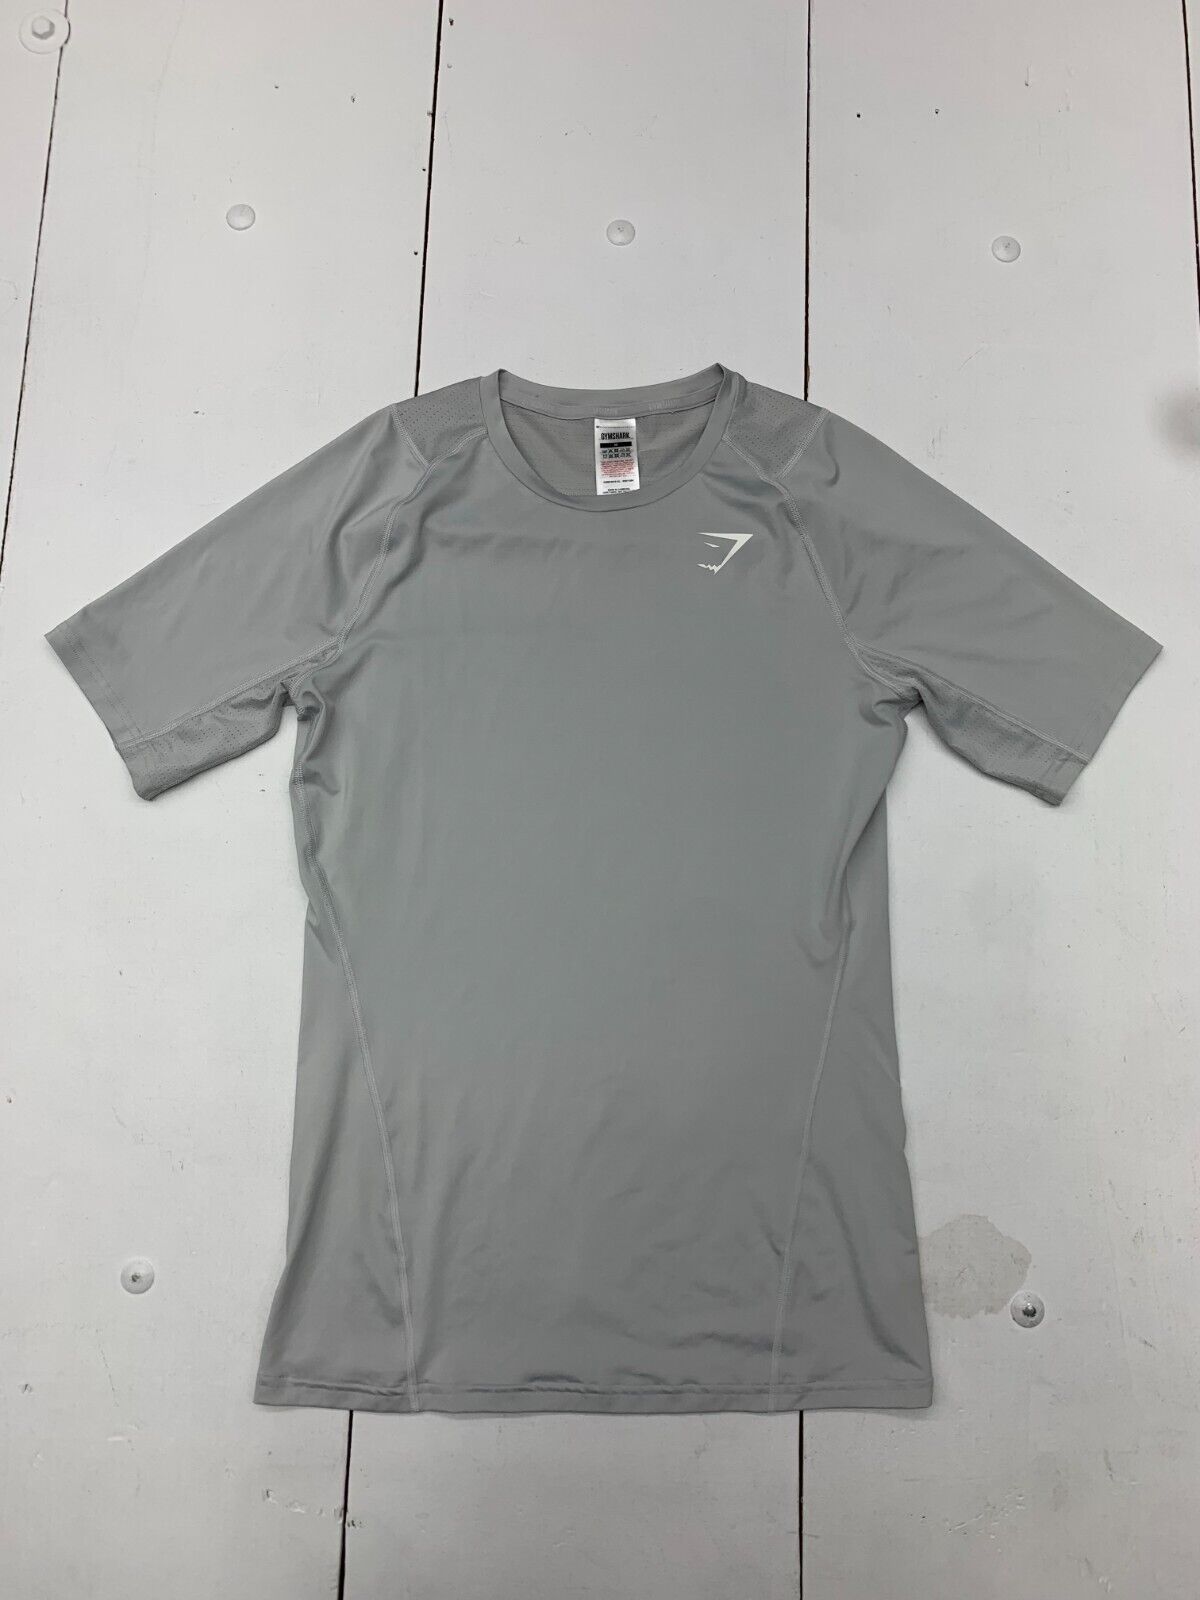 Gymshark Mens Light Grey Athletic Compression Short Sleeve Shirt Size -  beyond exchange